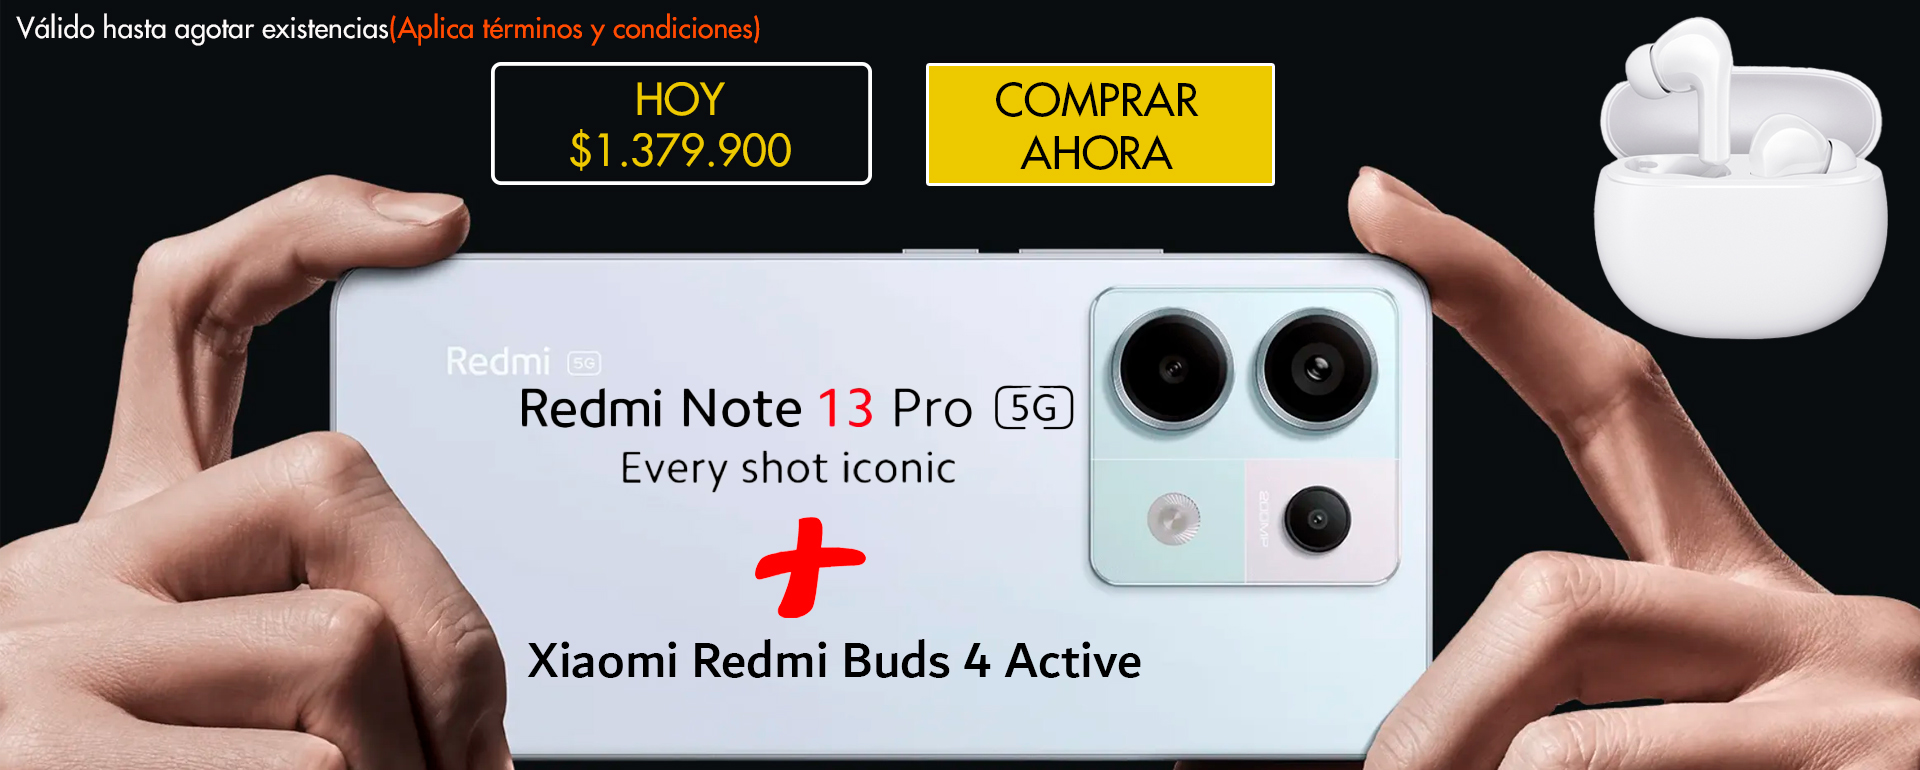 banner Redmi Note 13 Pro 5G + Promo